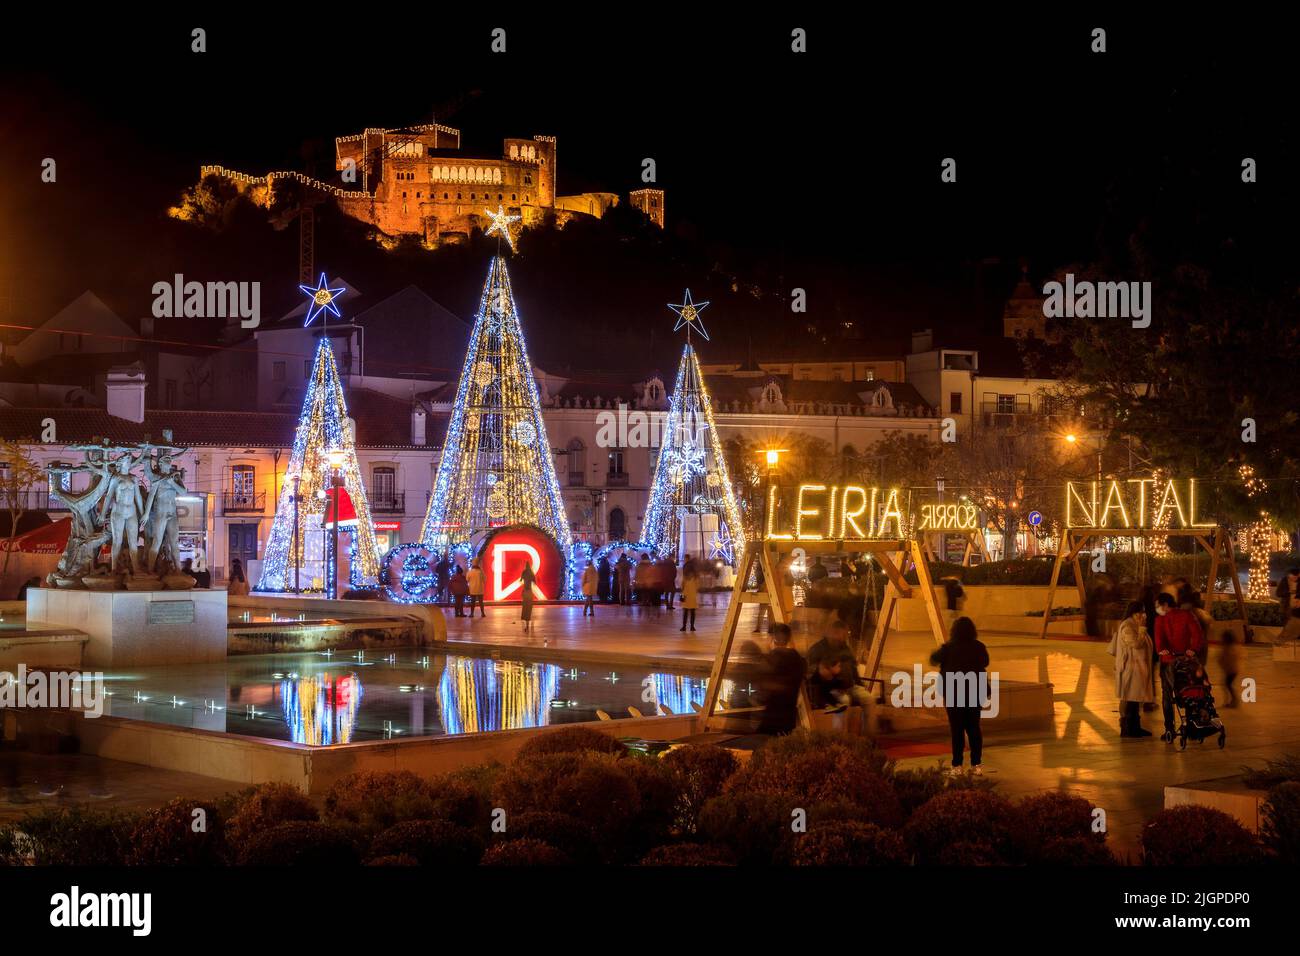 Leiria, Portugal - 8. Dezember 2021: Nachtansicht des leuchtenden Brunnens und Platzes des Stadtzentrums von Leiria in Portugal, mit weihnachtlicher Dekoration Stockfoto